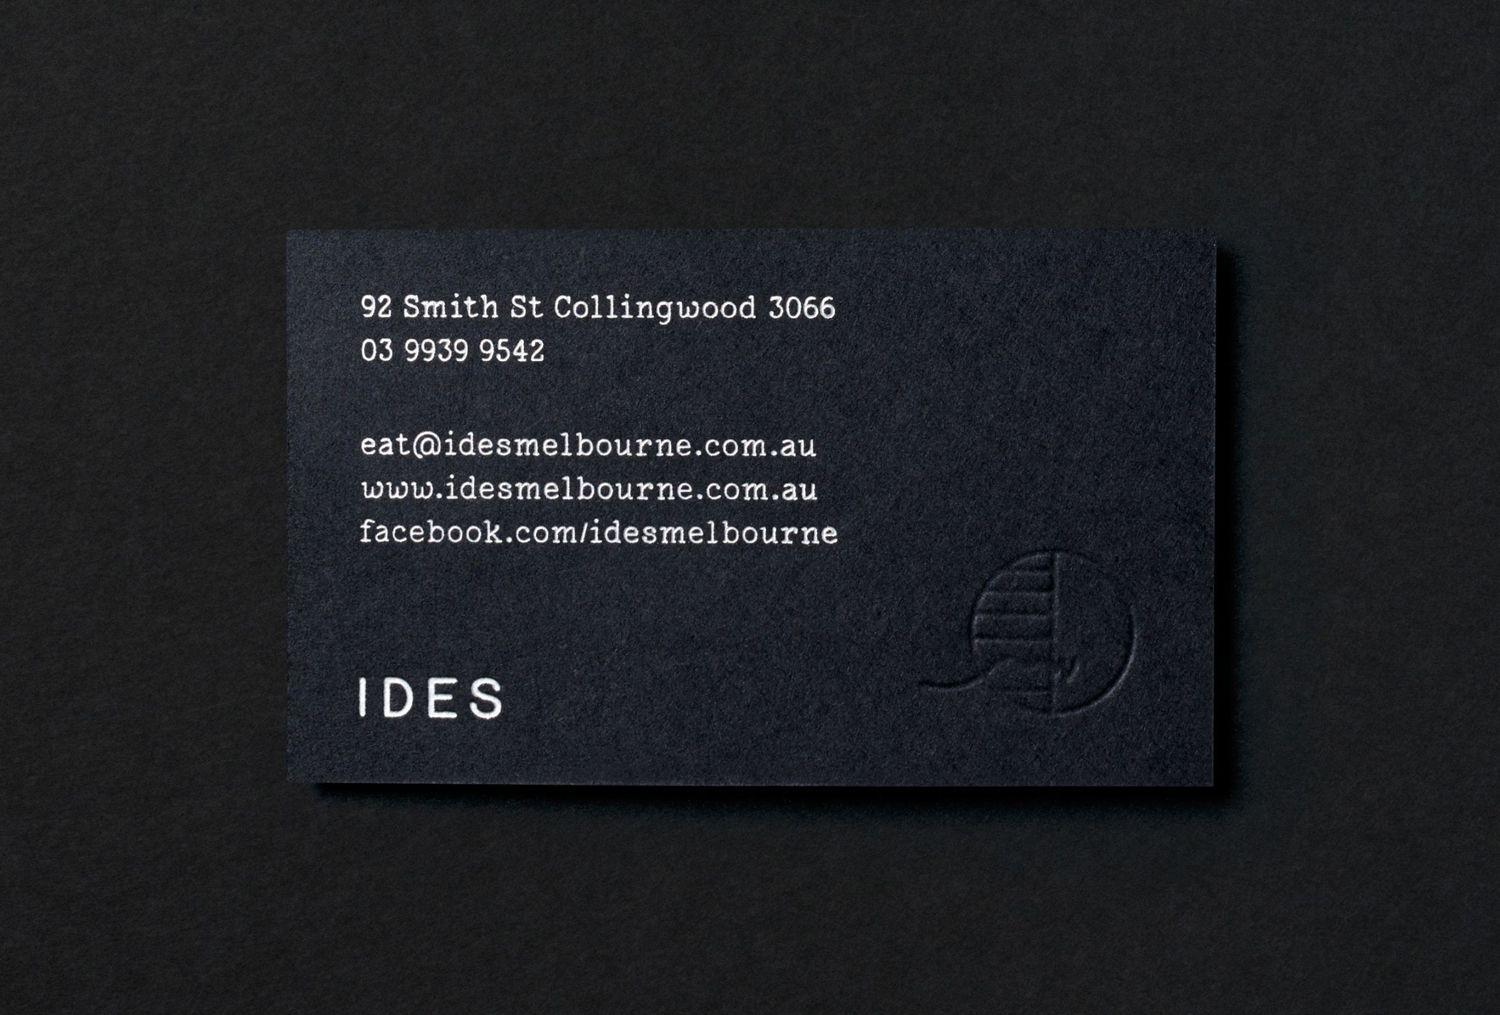 Black and White Restaurant Rectangle Logo - New Branding for Ides